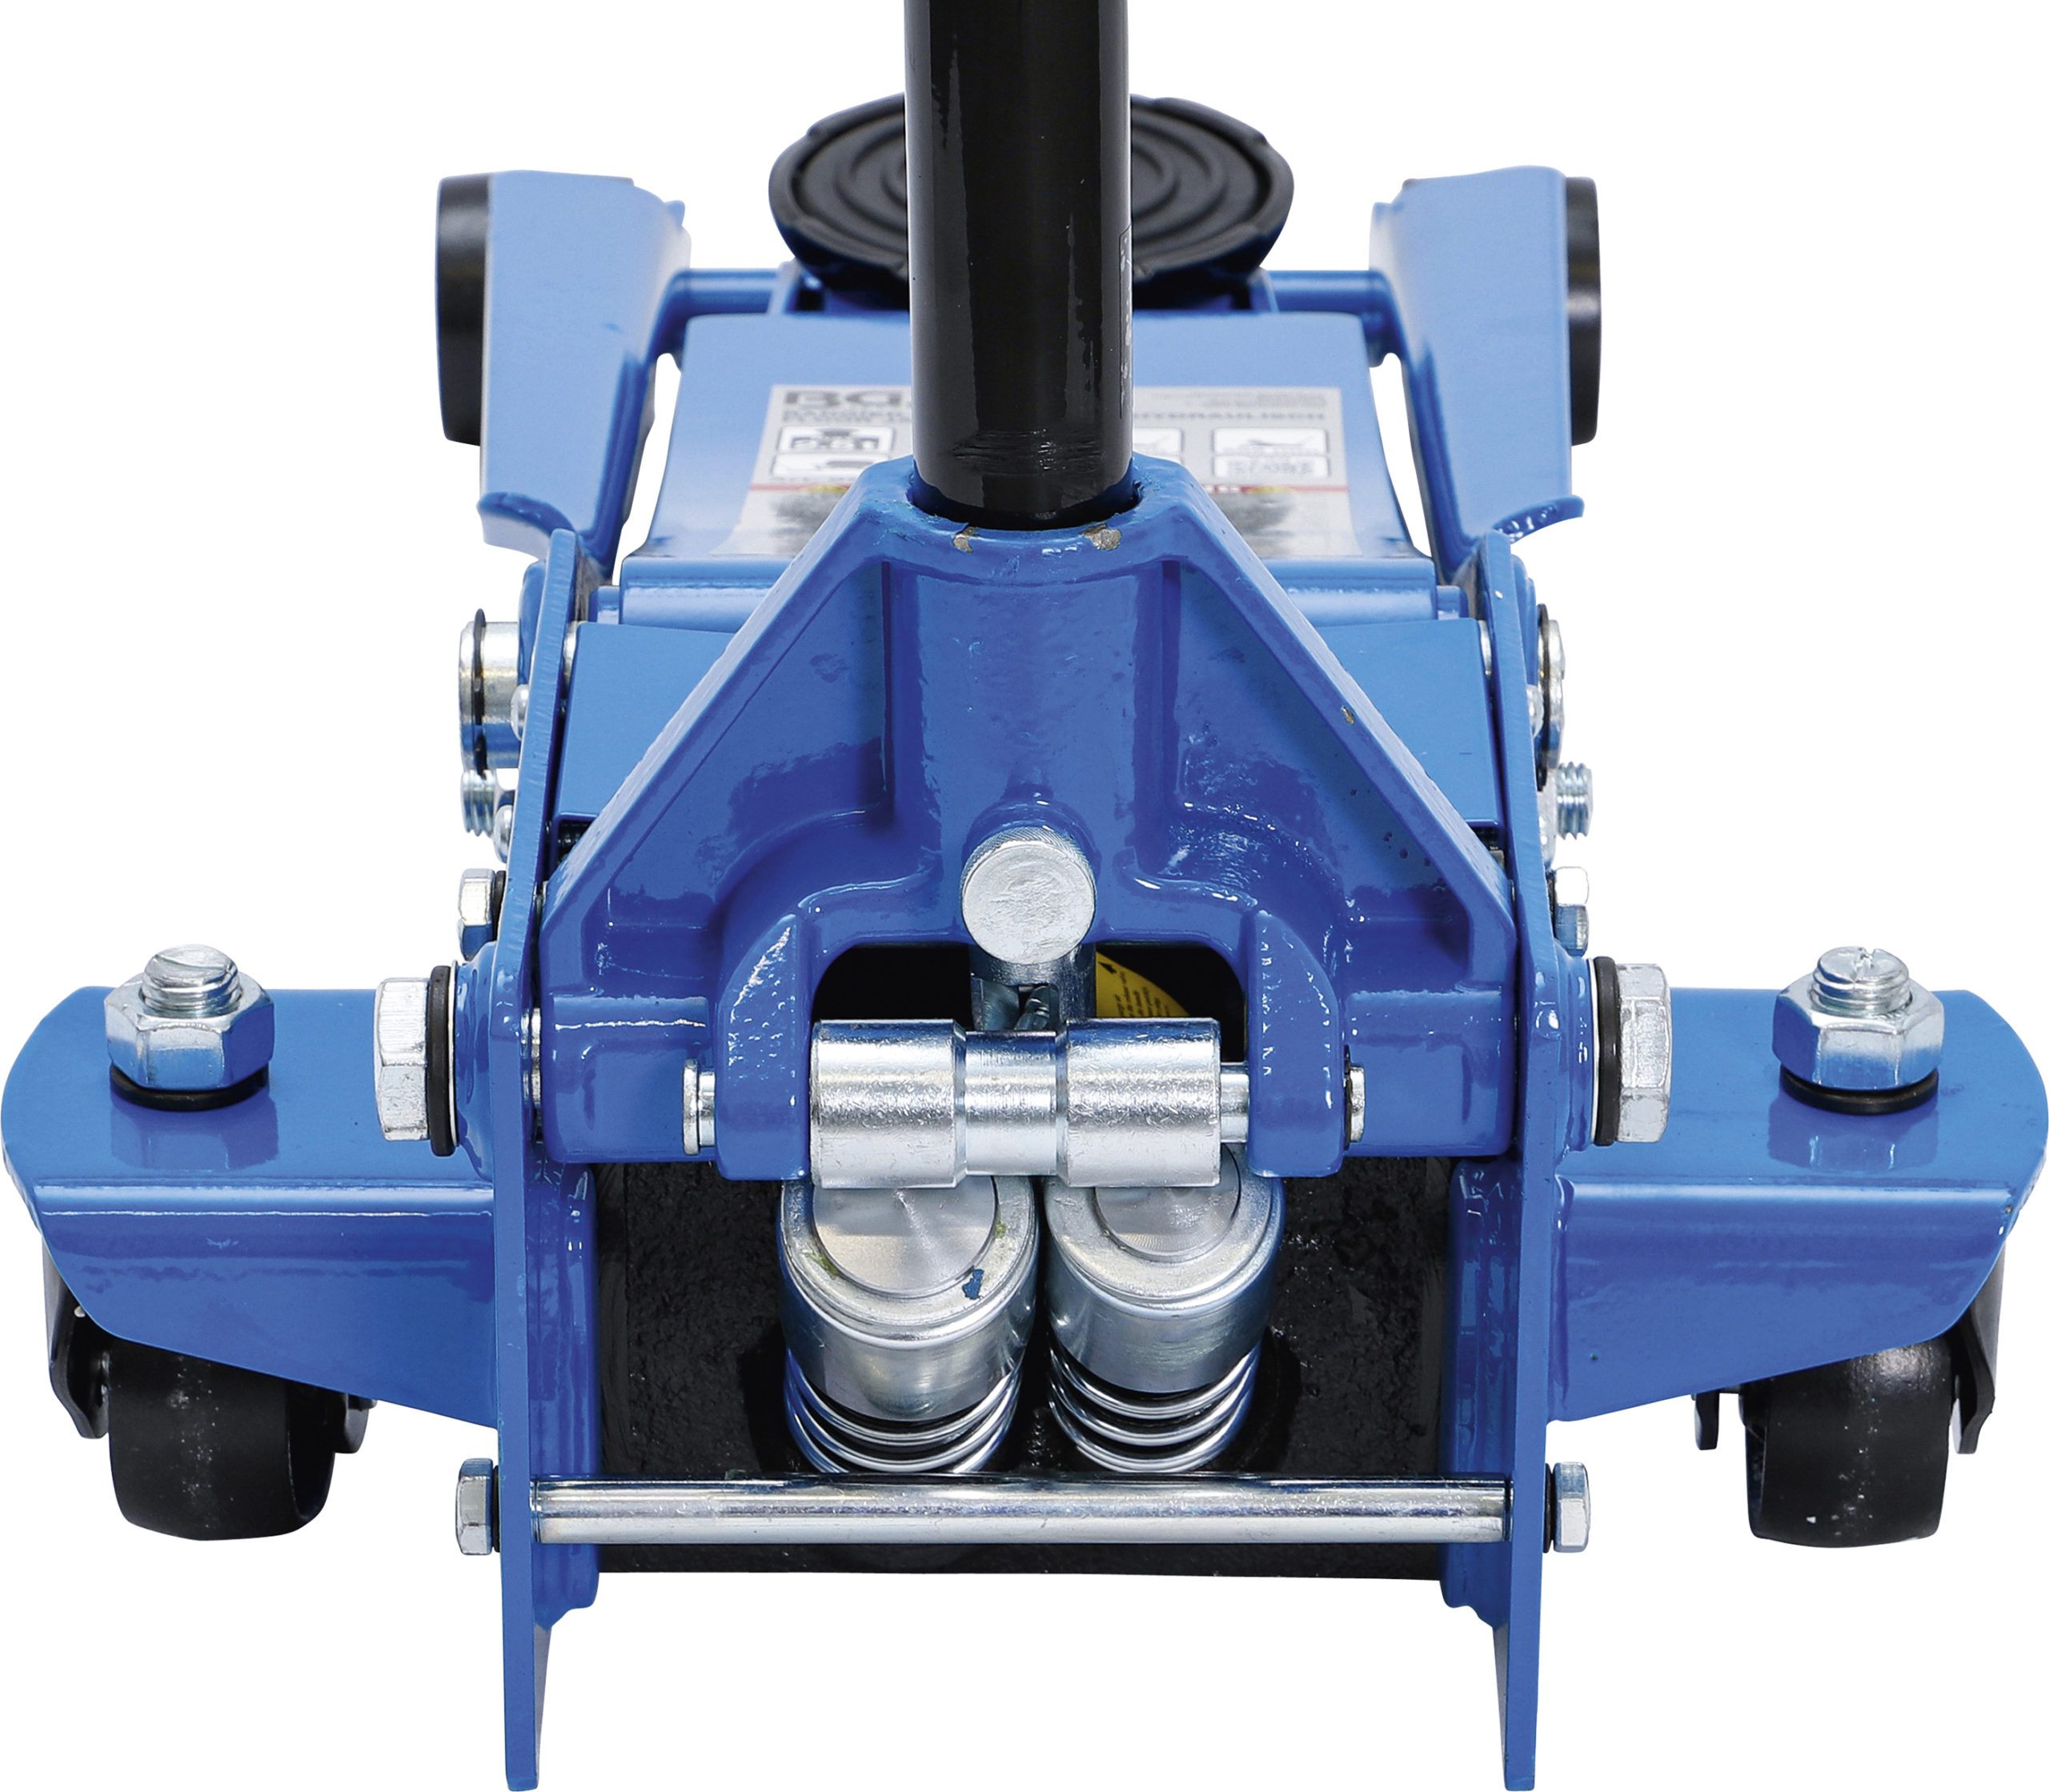 BGS Rangier-Wagenheber | hydraulisch | extra flach | 2,5 t | Toolking GmbH  - Werkzeuge, Werkzeugbedarf und Werkstatteinrichtungen